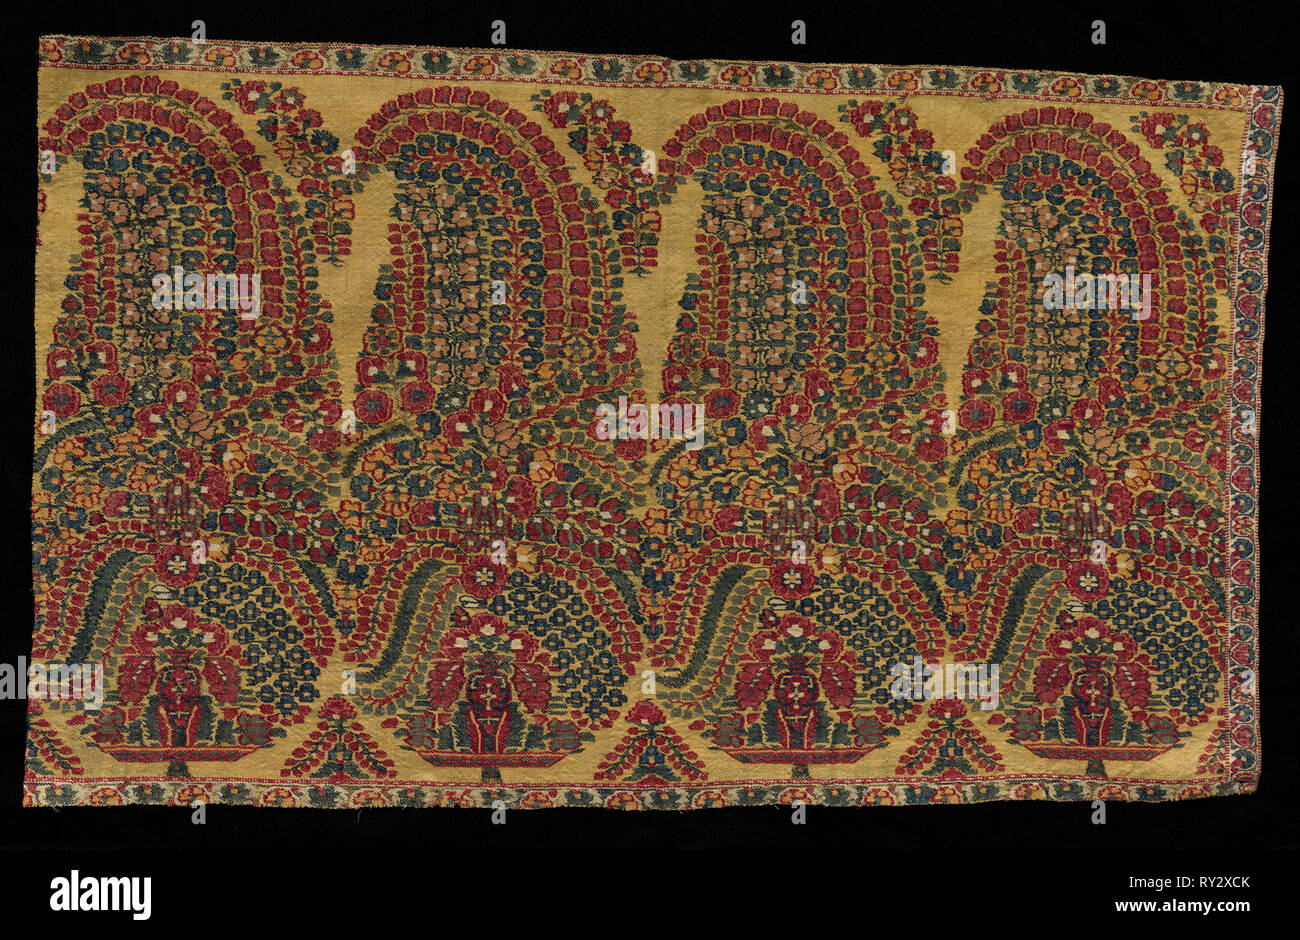 Fragment de la frontière d'un châle, début des années 1800. L'Inde, au Cachemire, au début du xixe siècle. Sergé tapisserie ; laine ; total : 52,1 x 32,4 cm (20 1/2 x 12 3/4 in Banque D'Images